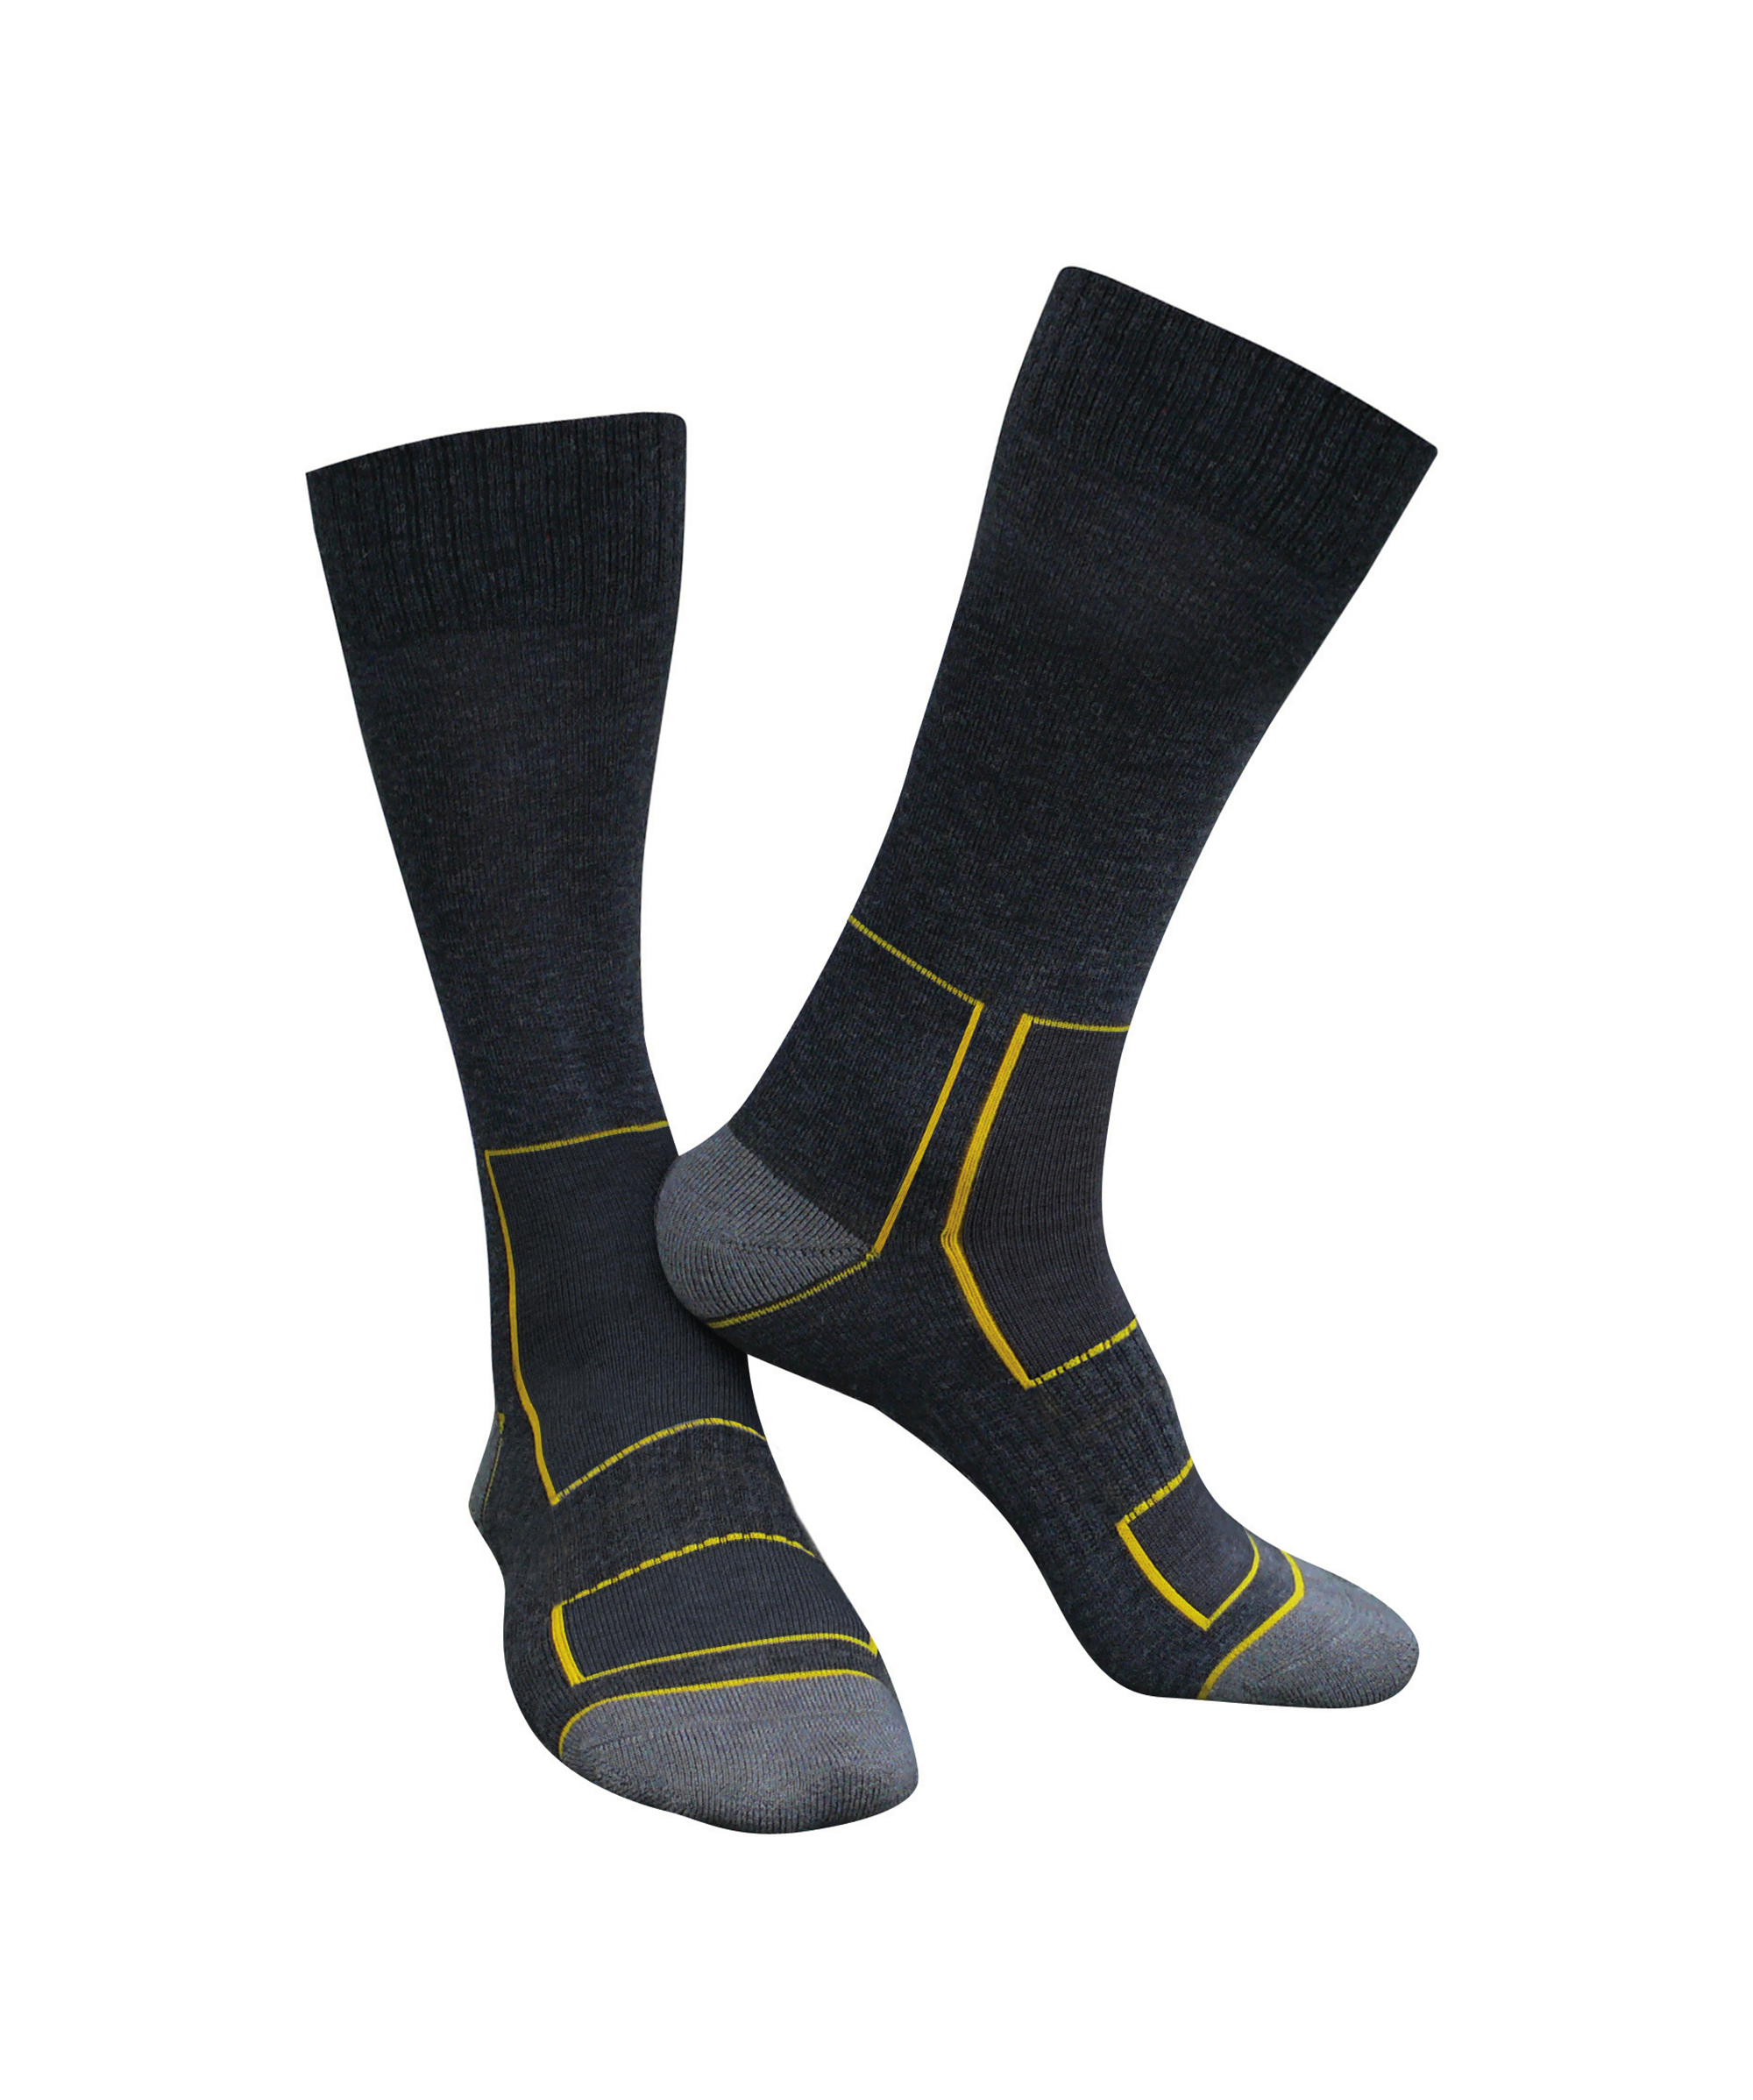 juno_wool-socks_black-anthracite-grey_front.jpg